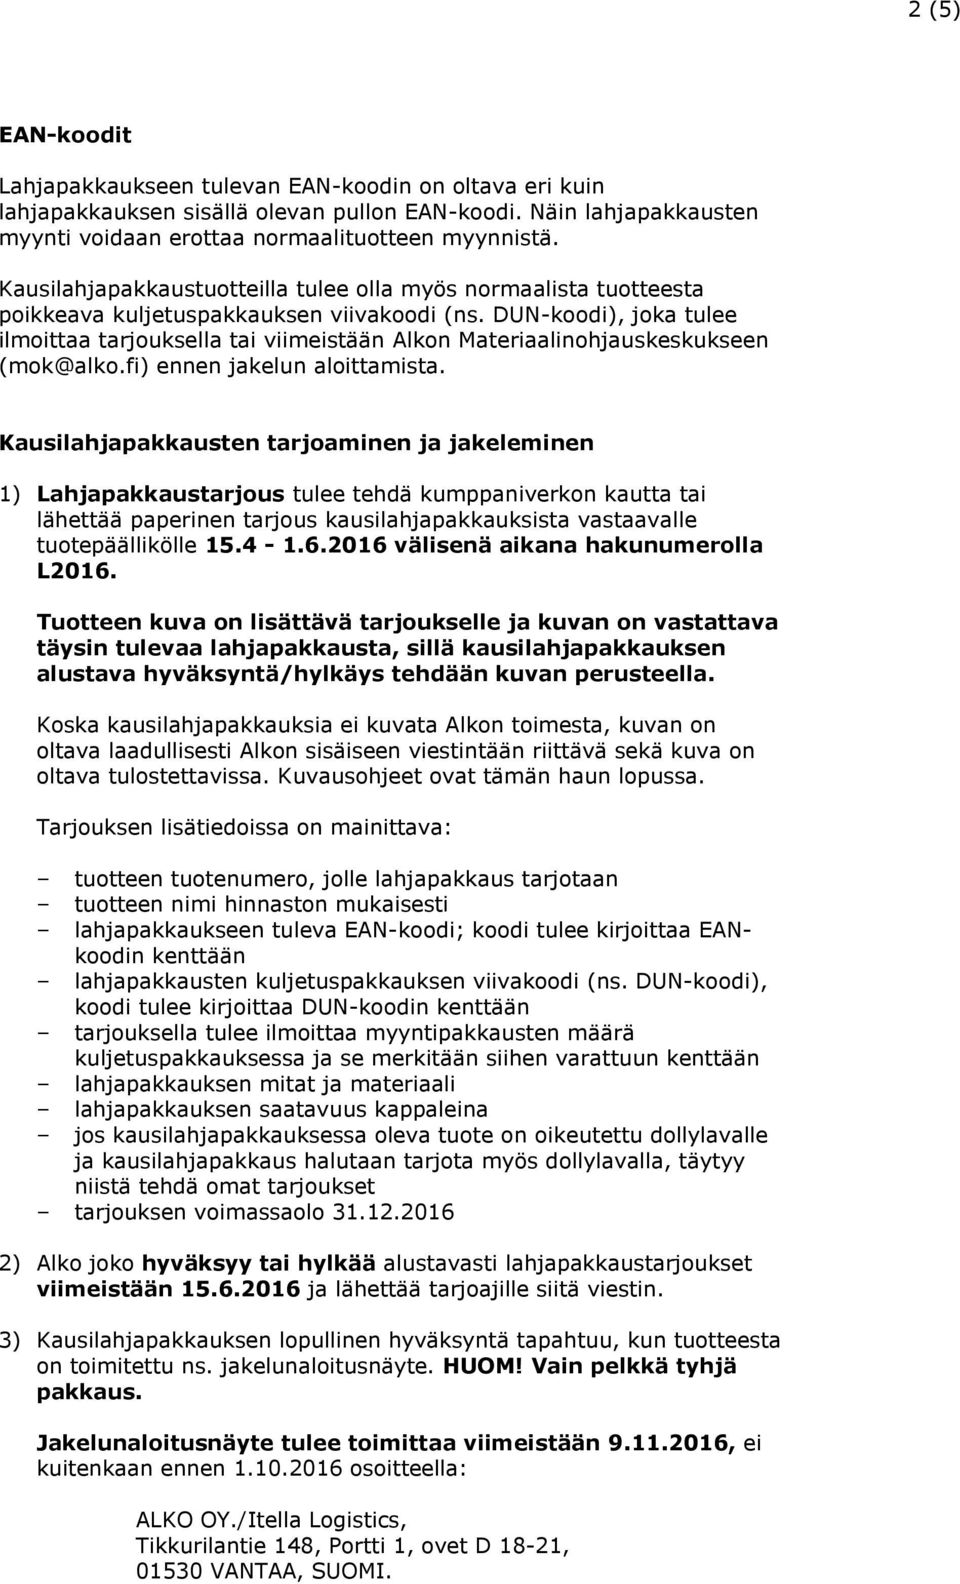 DUN-koodi), joka tulee ilmoittaa tarjouksella tai viimeistään Alkon Materiaalinohjauskeskukseen (mok@alko.fi) ennen jakelun aloittamista.